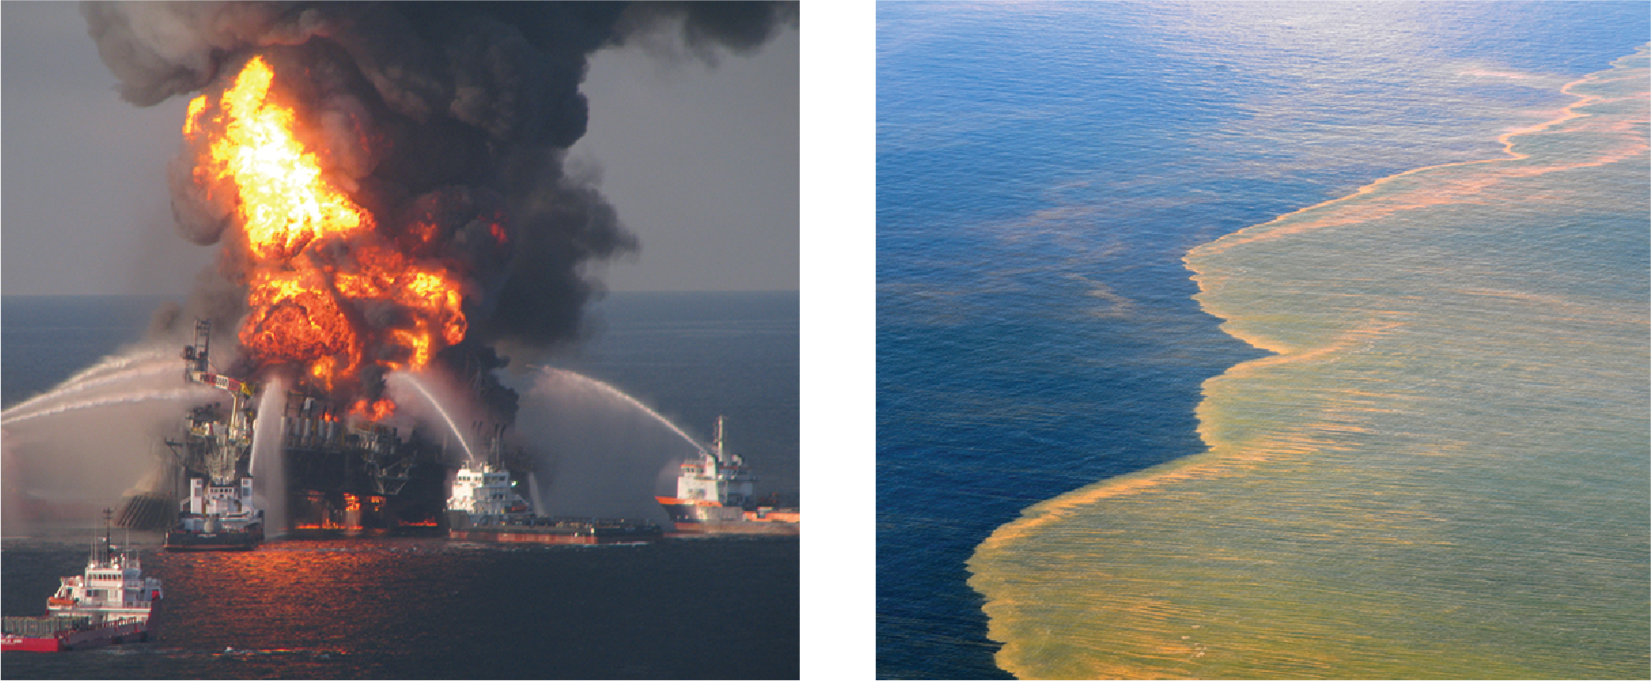 Esquerda: A plataforma de petróleo Deepwater Horizon está pegando fogo, cercada por vários navios pulverizando materiais de supressão. À direita: óleo flutuando na superfície da água no Golfo do México.